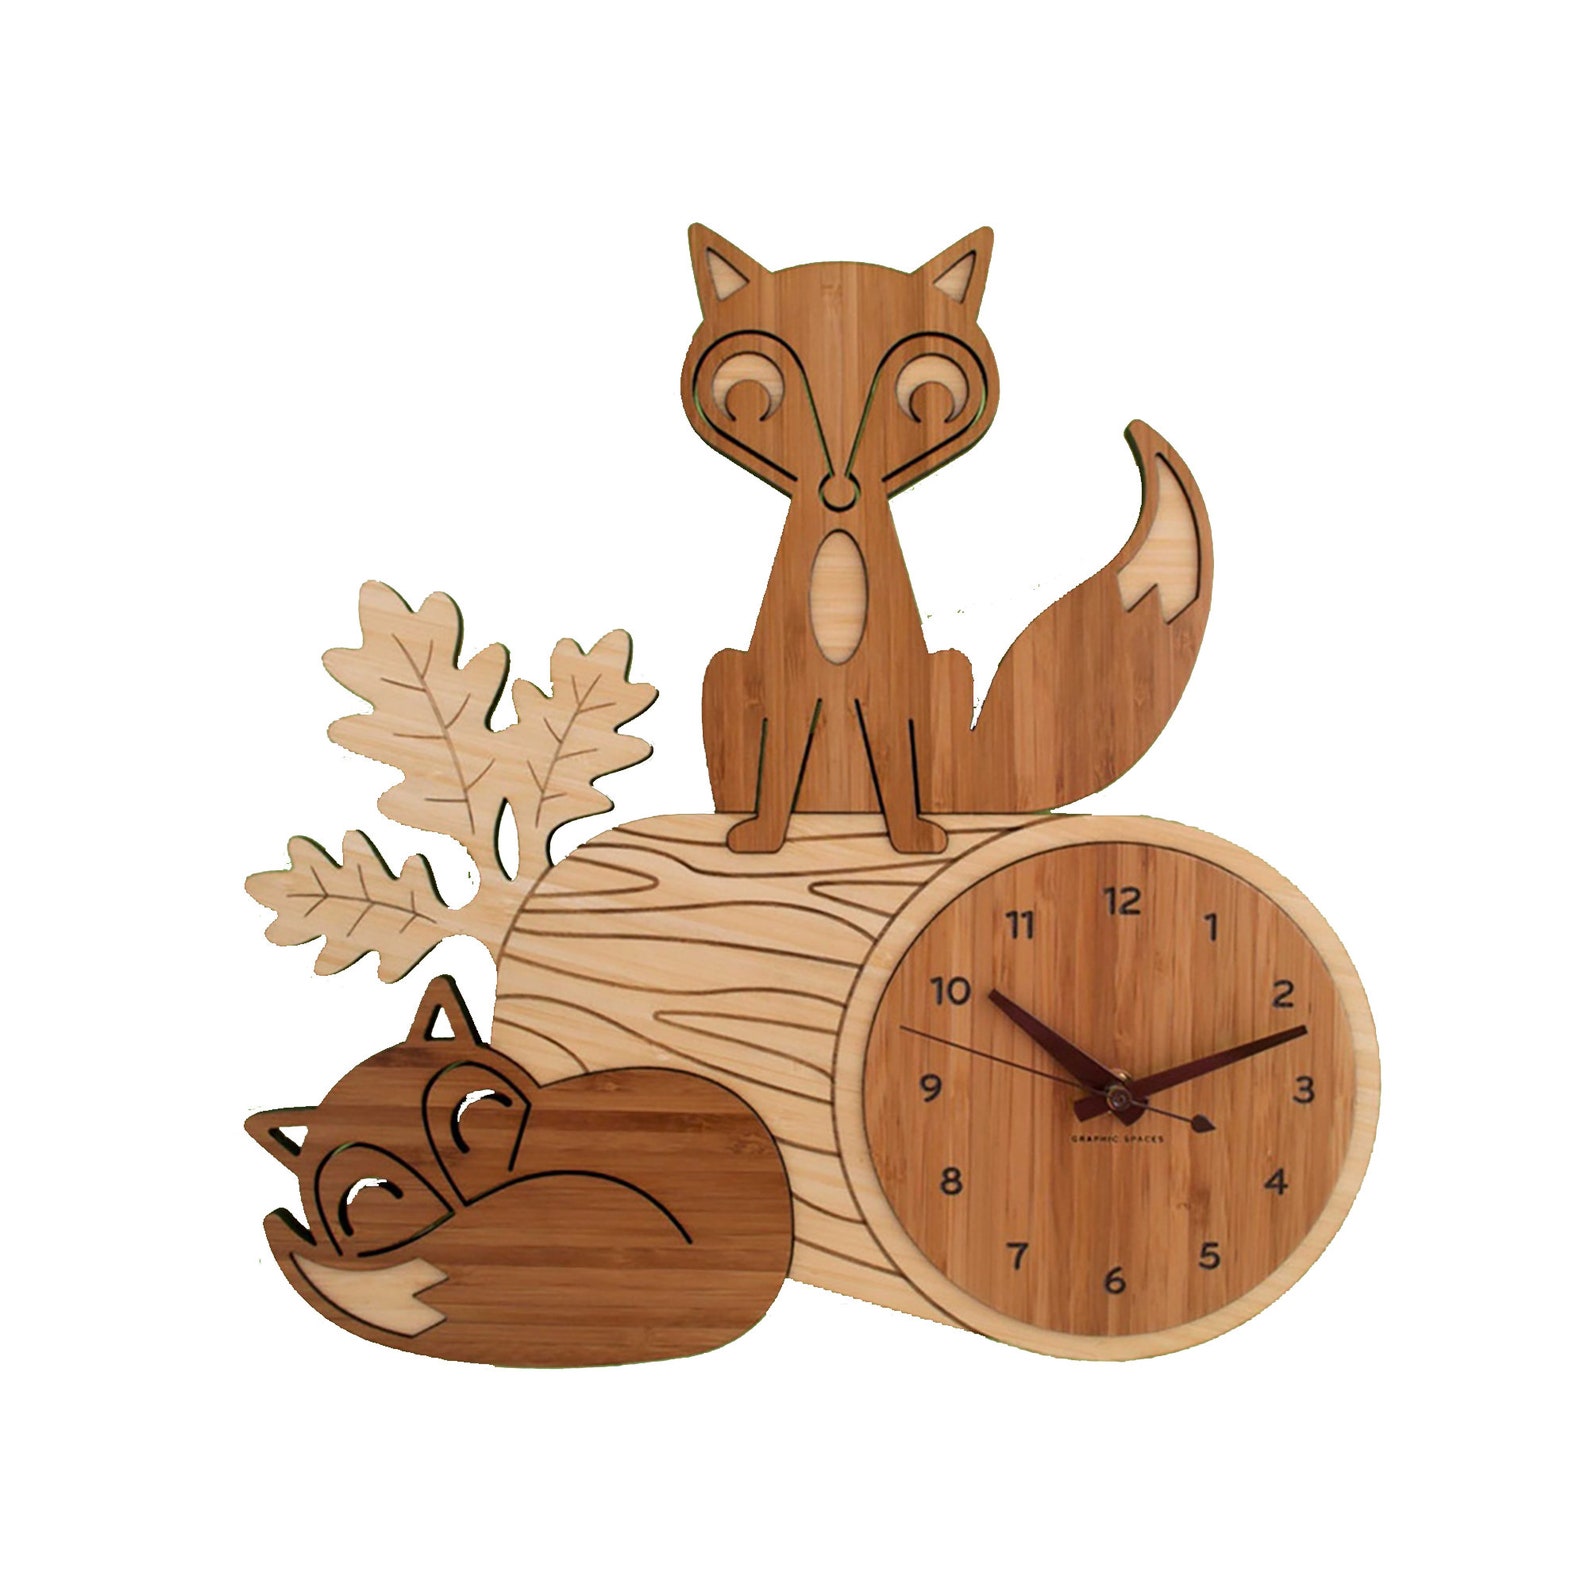 Часы foxes. Часы для детей из дерева. Настенные часы лиса. Деревянные часы на ЧПУ. Часы деревянные кот детские.